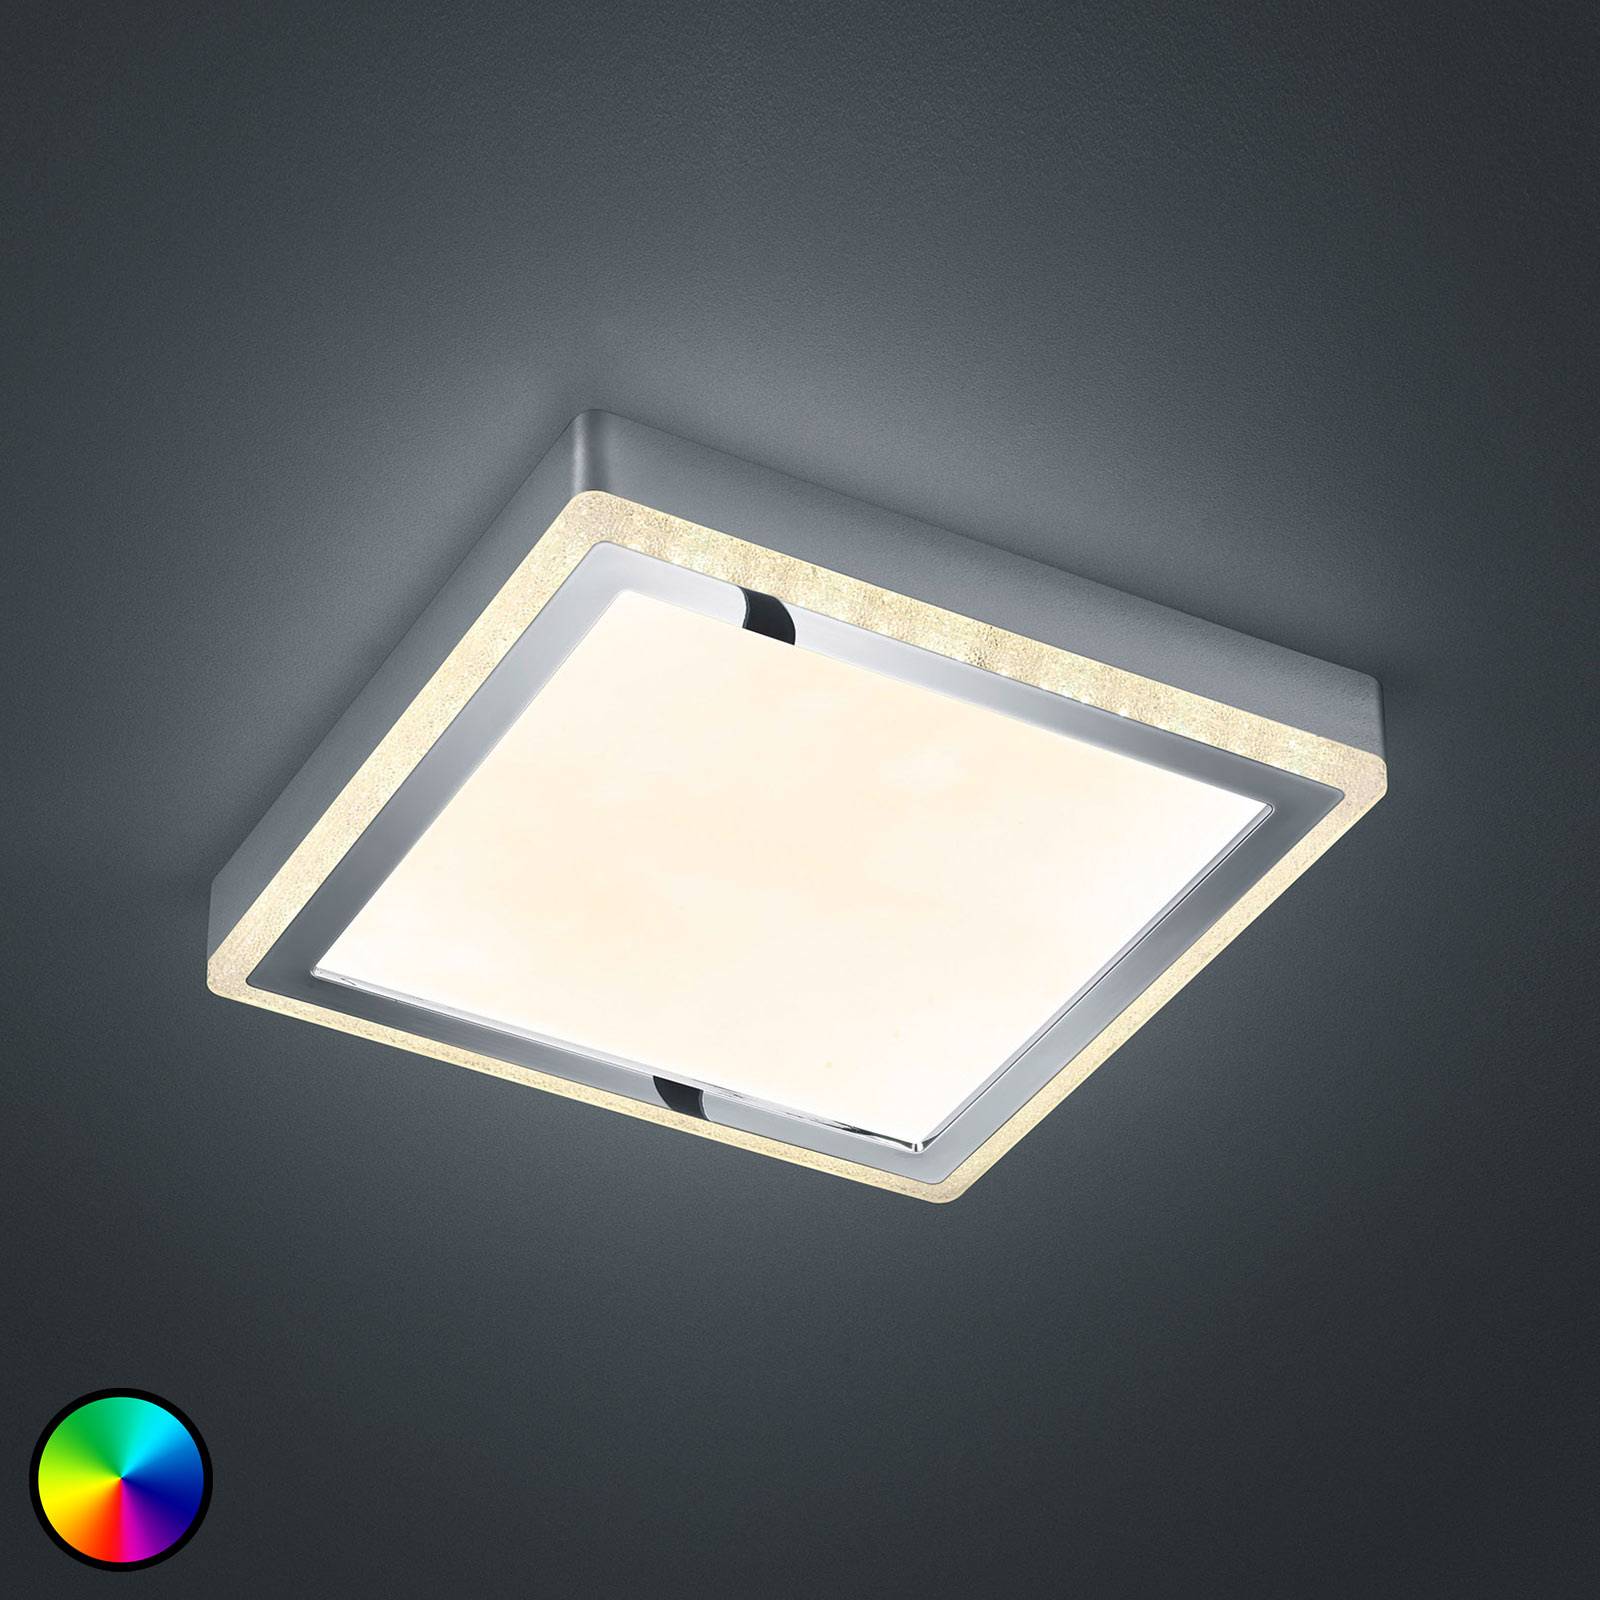 Lampa sufitowa LED Slide, biała, kątowa, 25x25cm